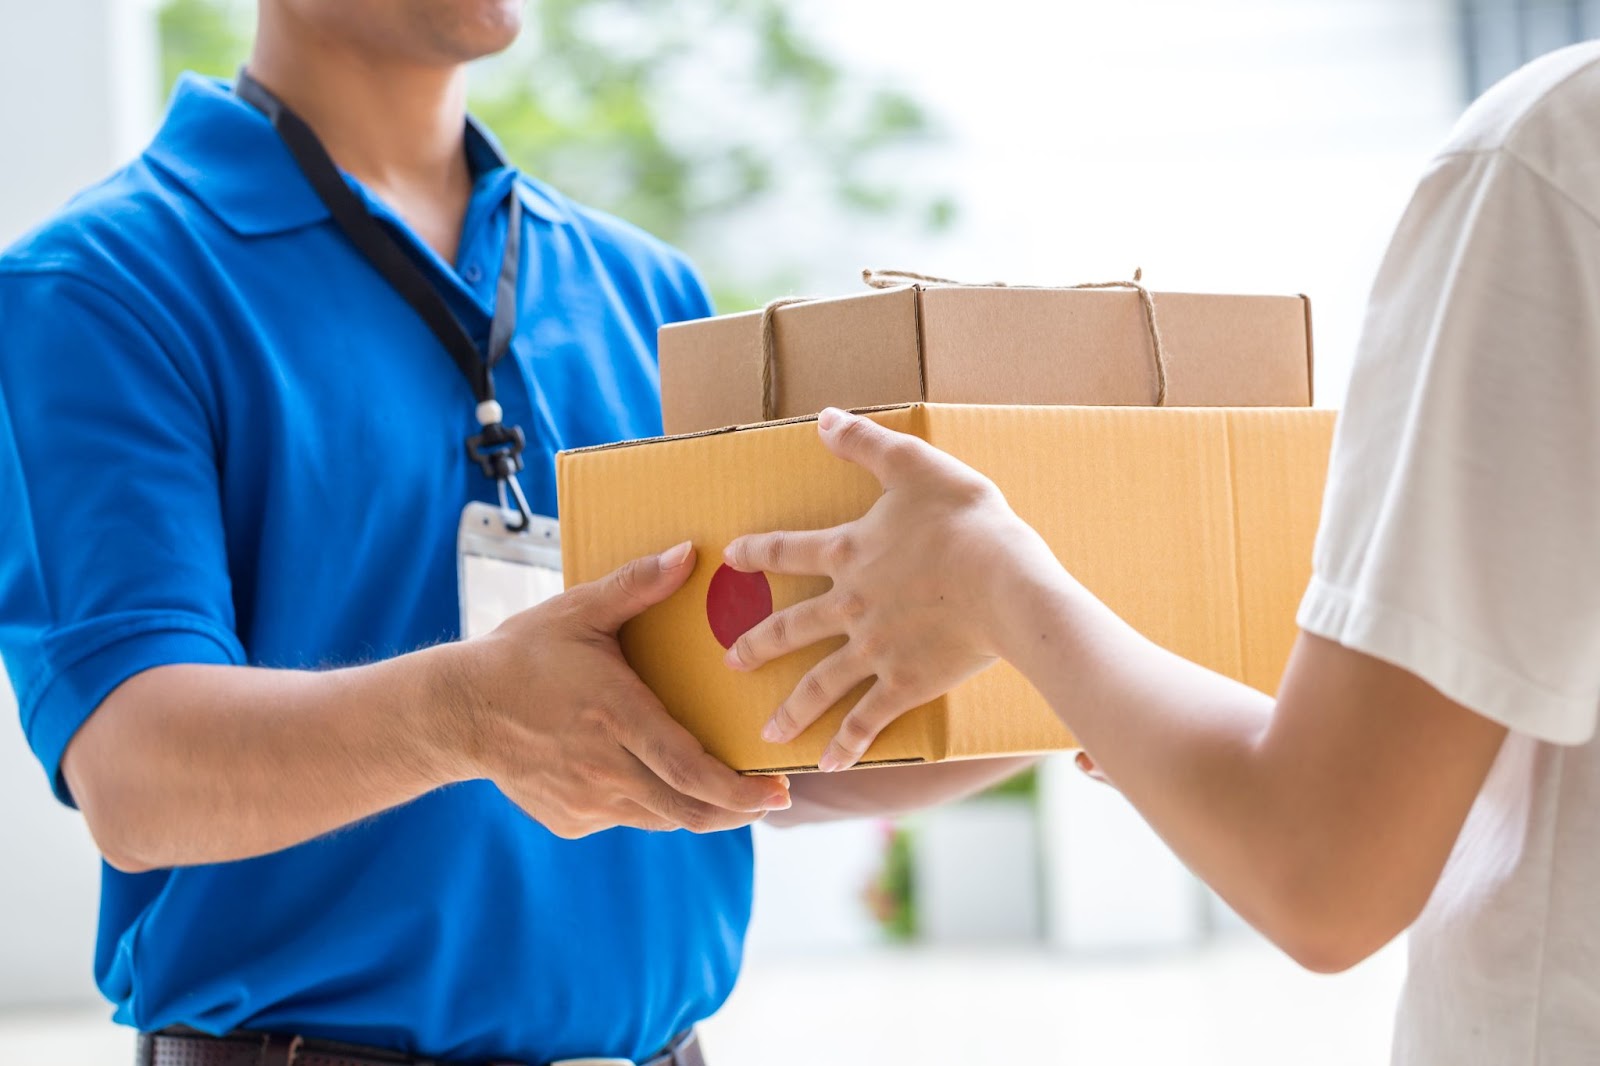 Produtos sob demanda ou pronta-entrega: principais diferenças no envio